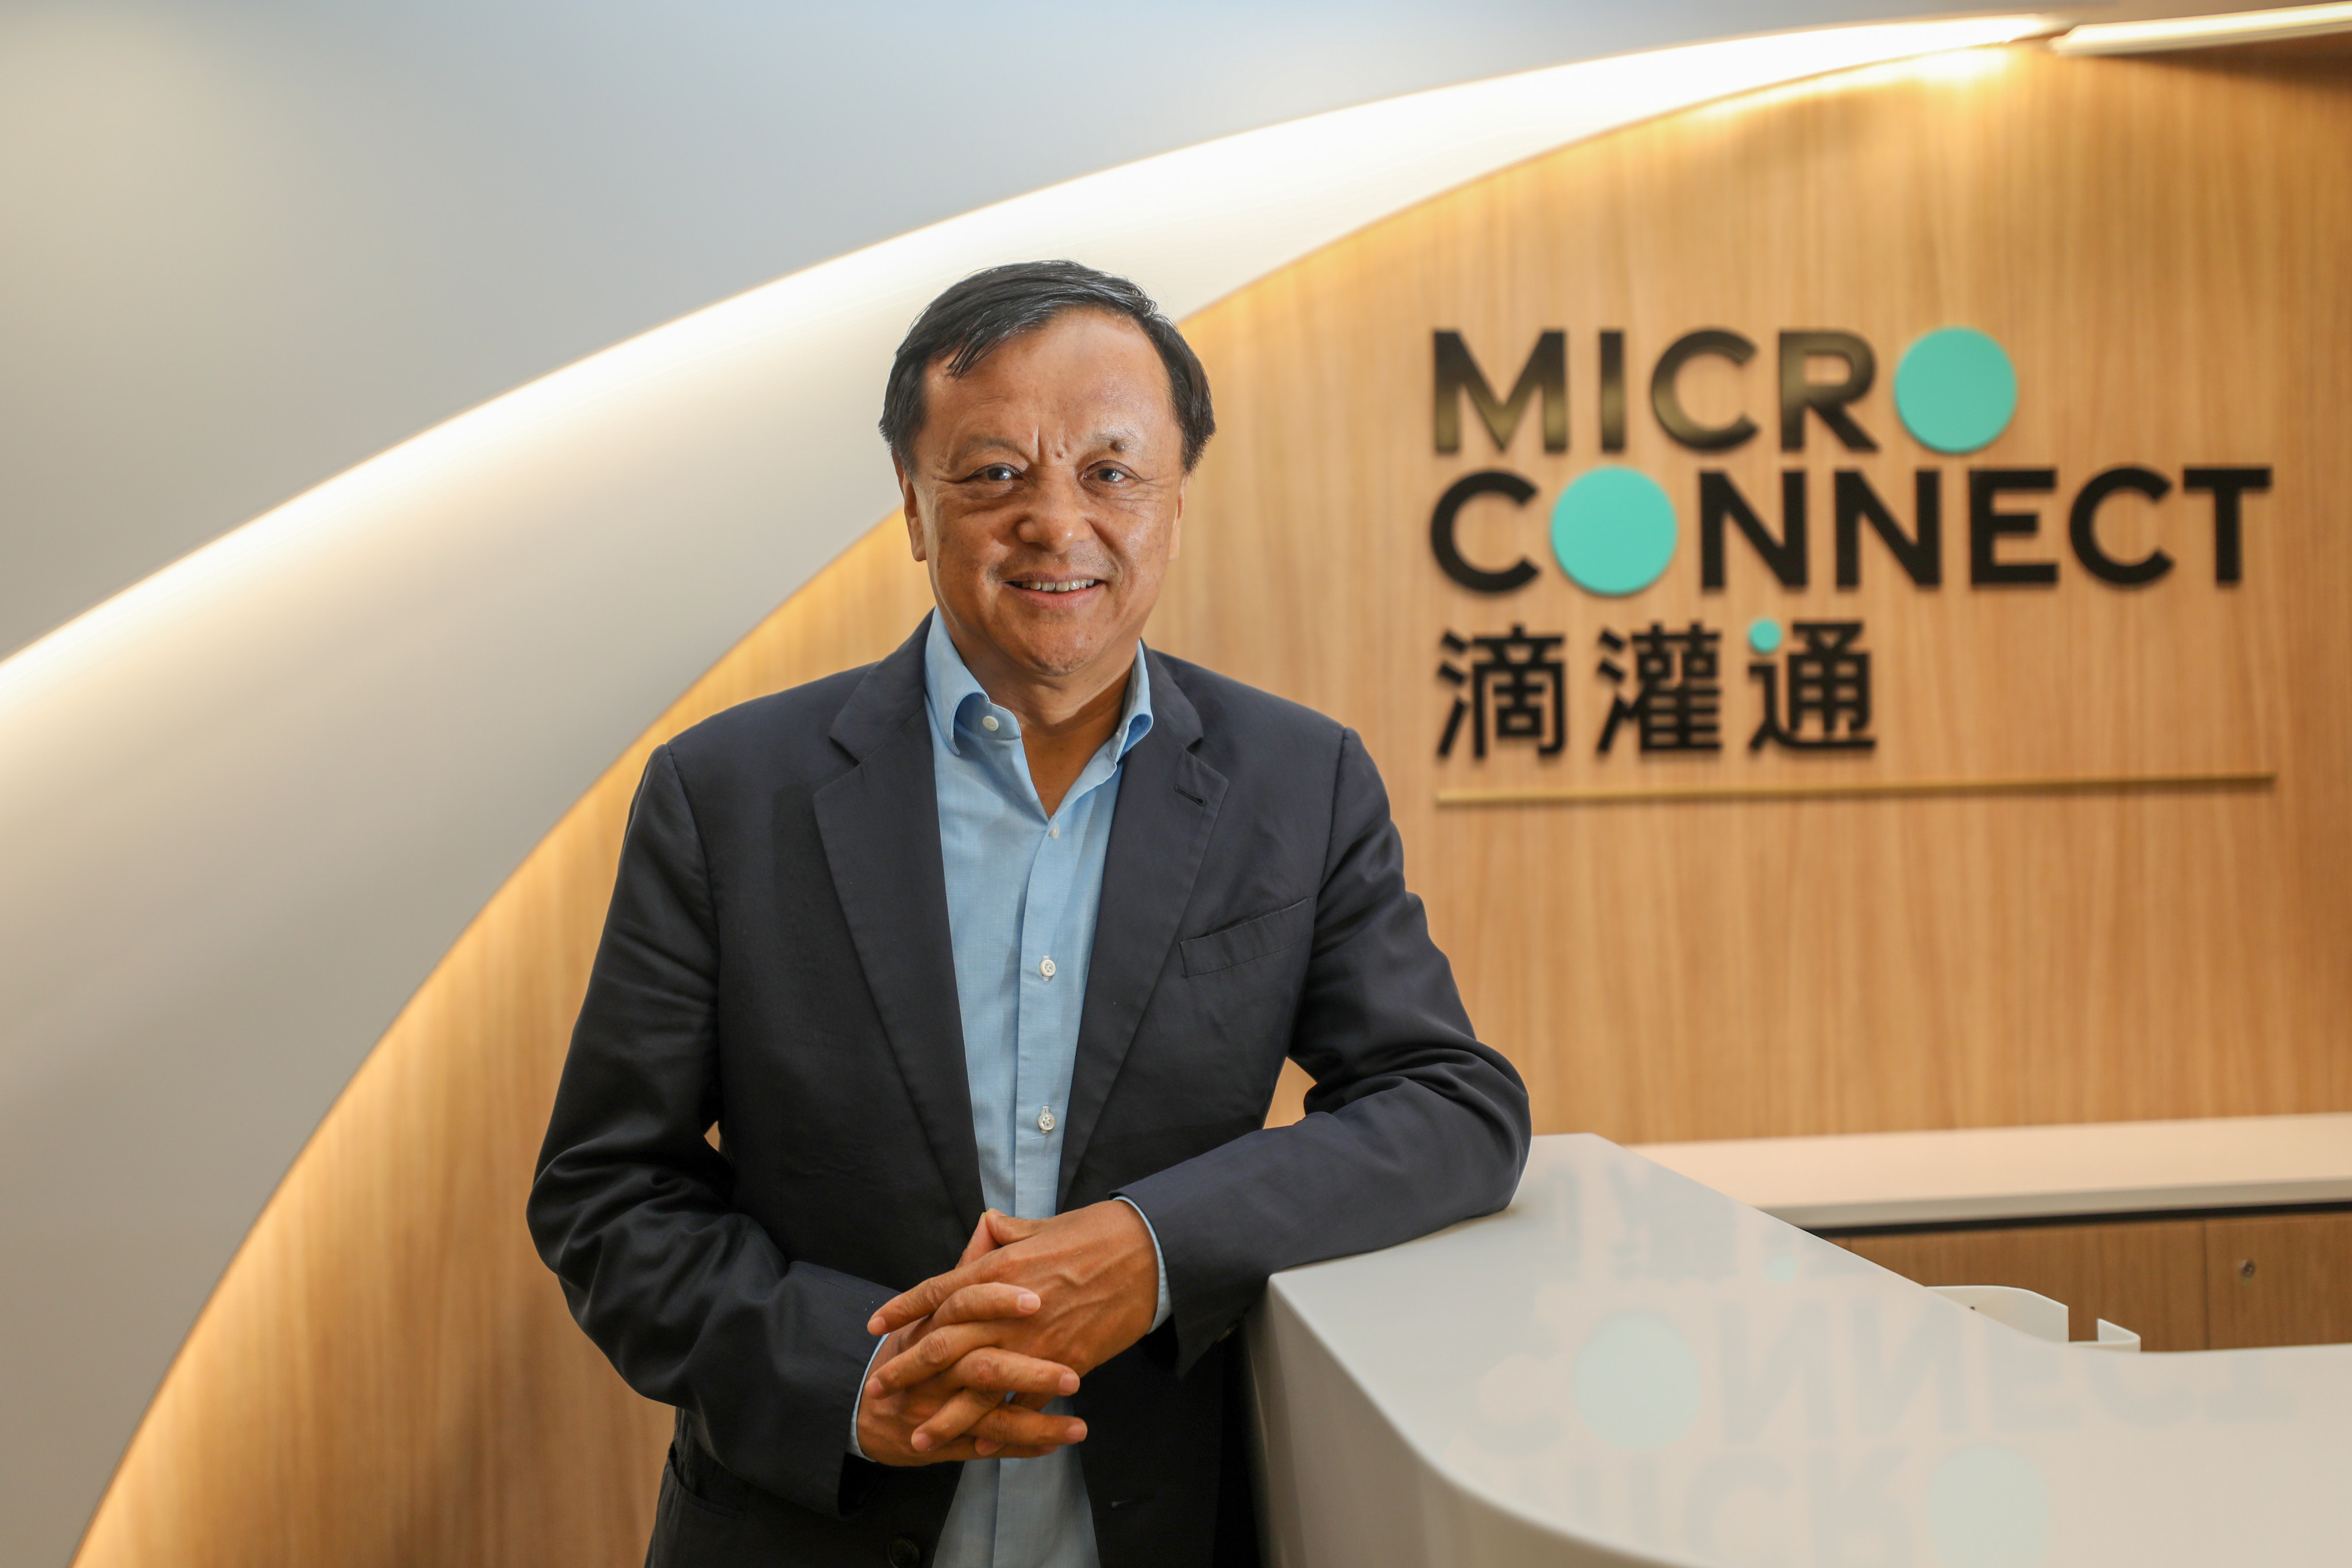 Charles Li Xiaojia, who launched fintech platform Micro Connect. Photo: SCMP/ Xiaomei Chen